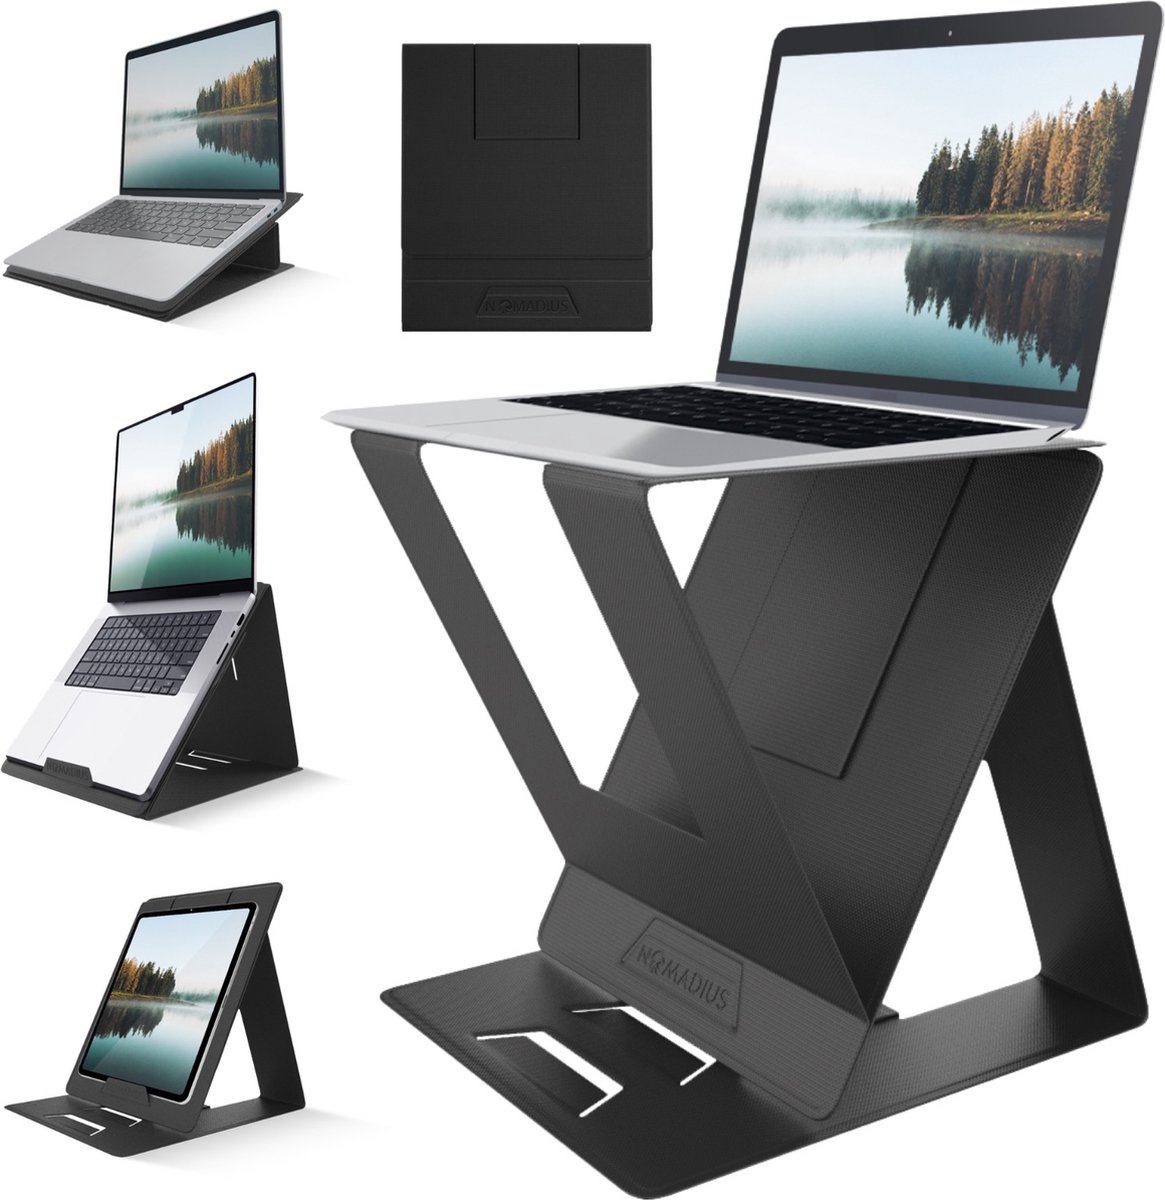 Nomadius X Stand - Opvouwbare Laptop Stand - Zit Sta Laptop Standaard - Verstelbaar in 5 Posities - Draagbaar - Premium PU-Leder - Snel Opzetbare Laptop, Tablet & iPad Houder - Tablethouder - Zit-Sta Bureau - Laptopstandaard